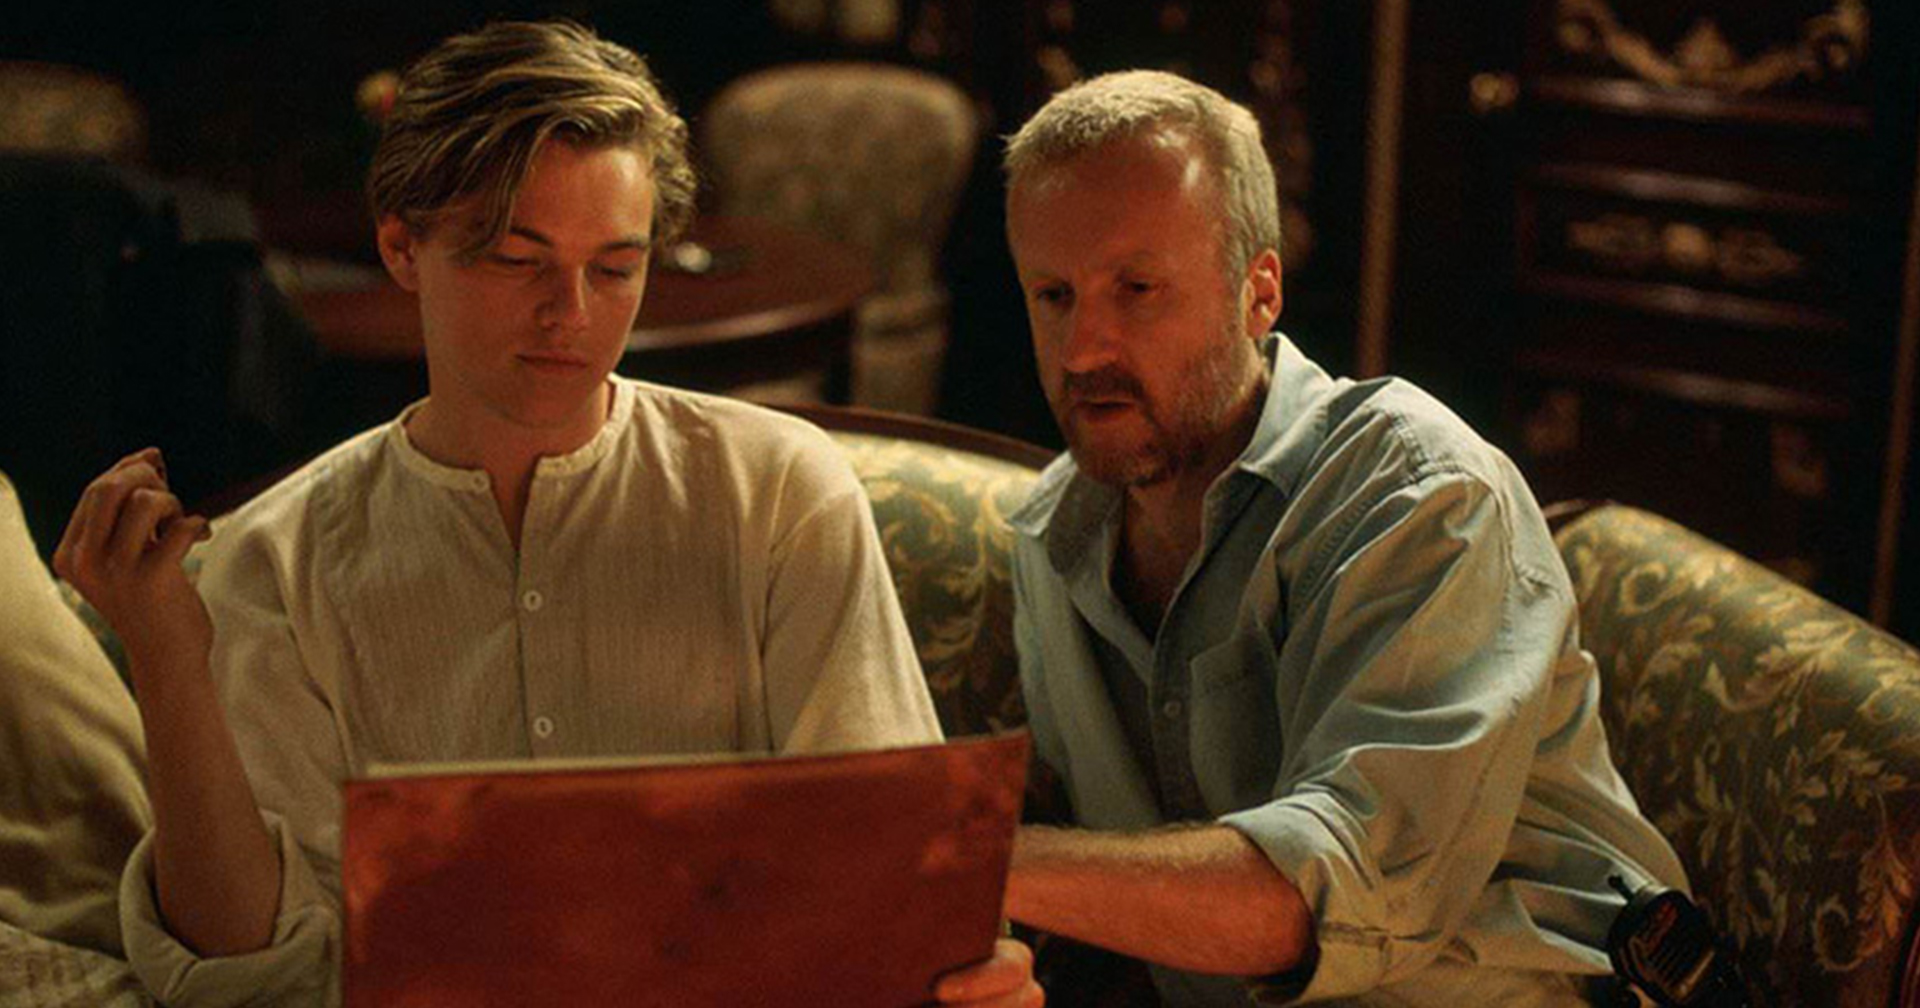 James Cameron แฉ Leonardo DiCaprio เกือบชวดบท แจ็ก ดอว์สัน ในหนัง ‘Titanic’ เพียงเพราะว่าไม่ยอมอ่านบท